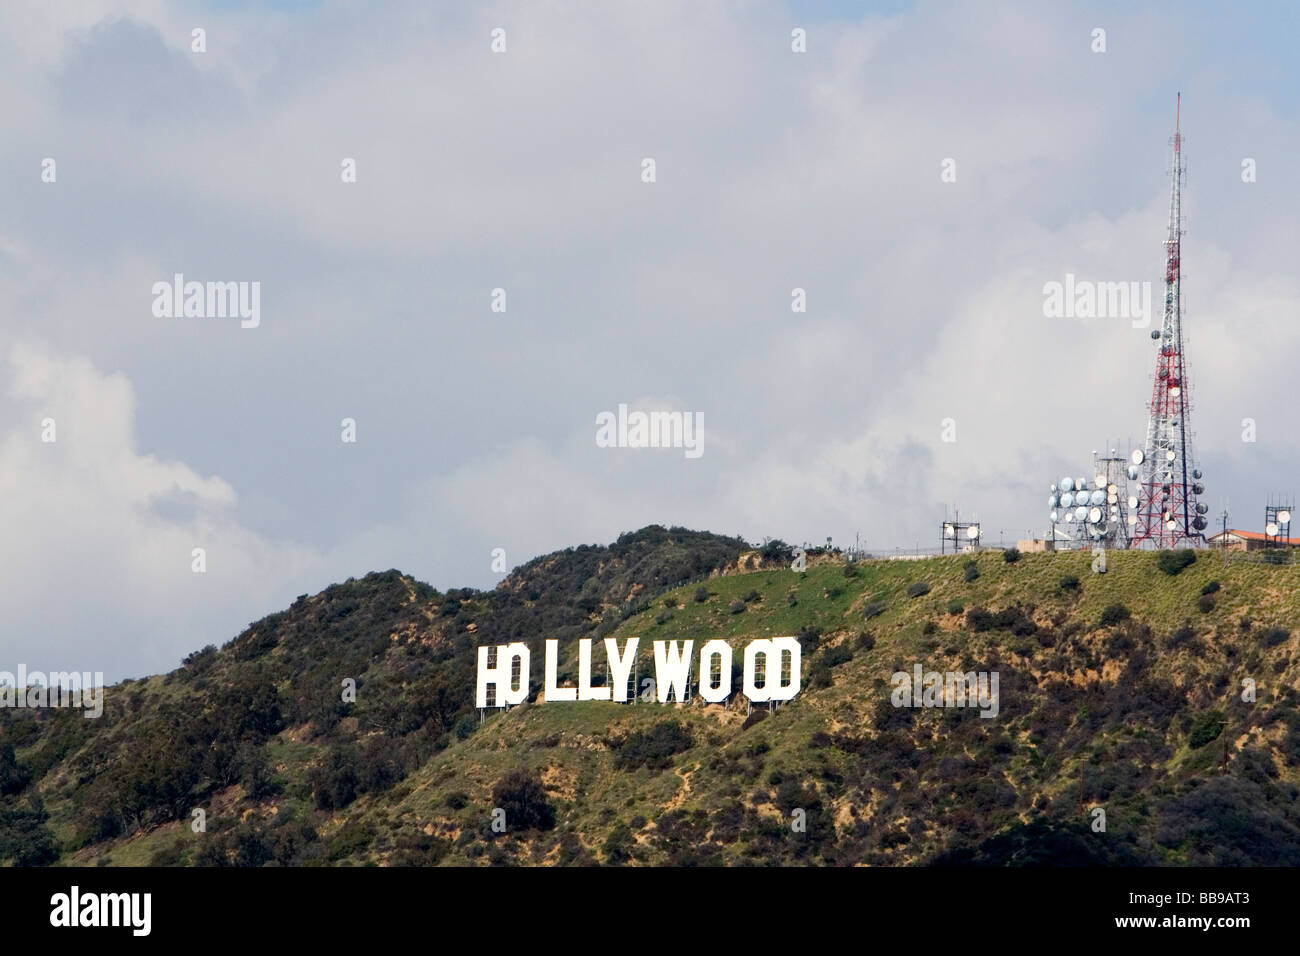 El letrero de Hollywood en el área de Hollywood Hills, Los Ángeles, California, EE.UU. Foto de stock